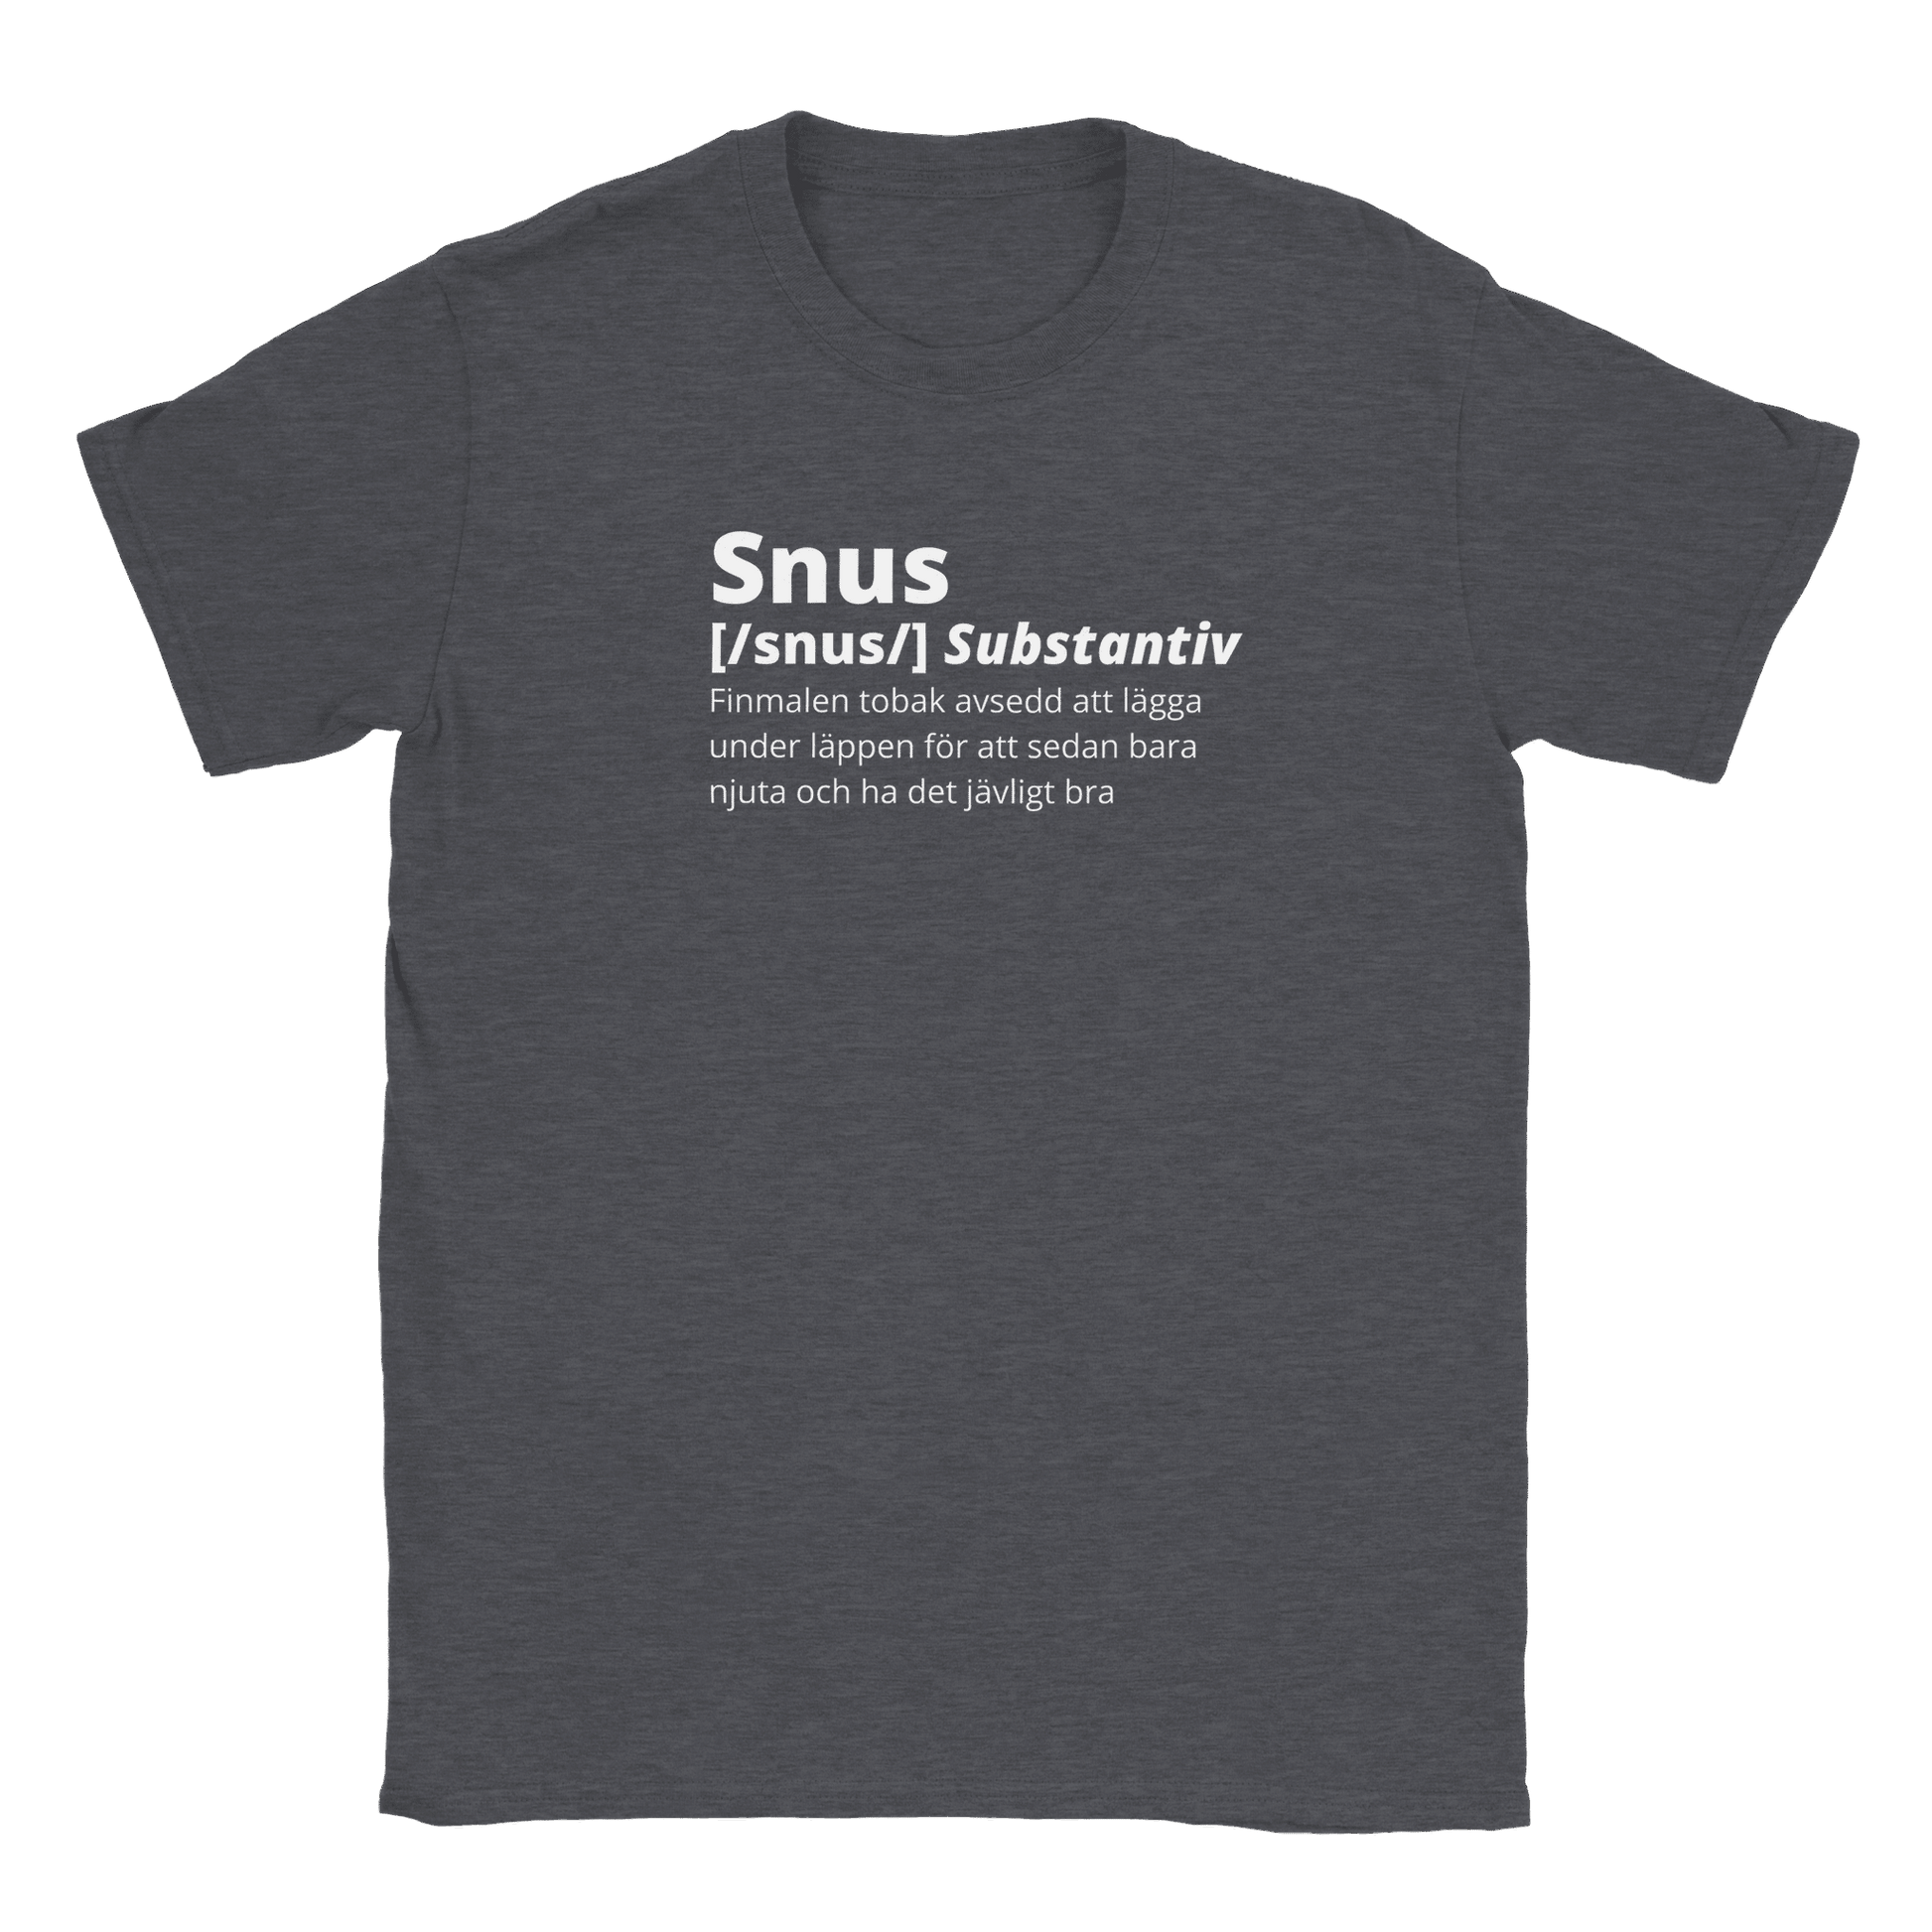 Snus - T-shirt Mörk Ljung